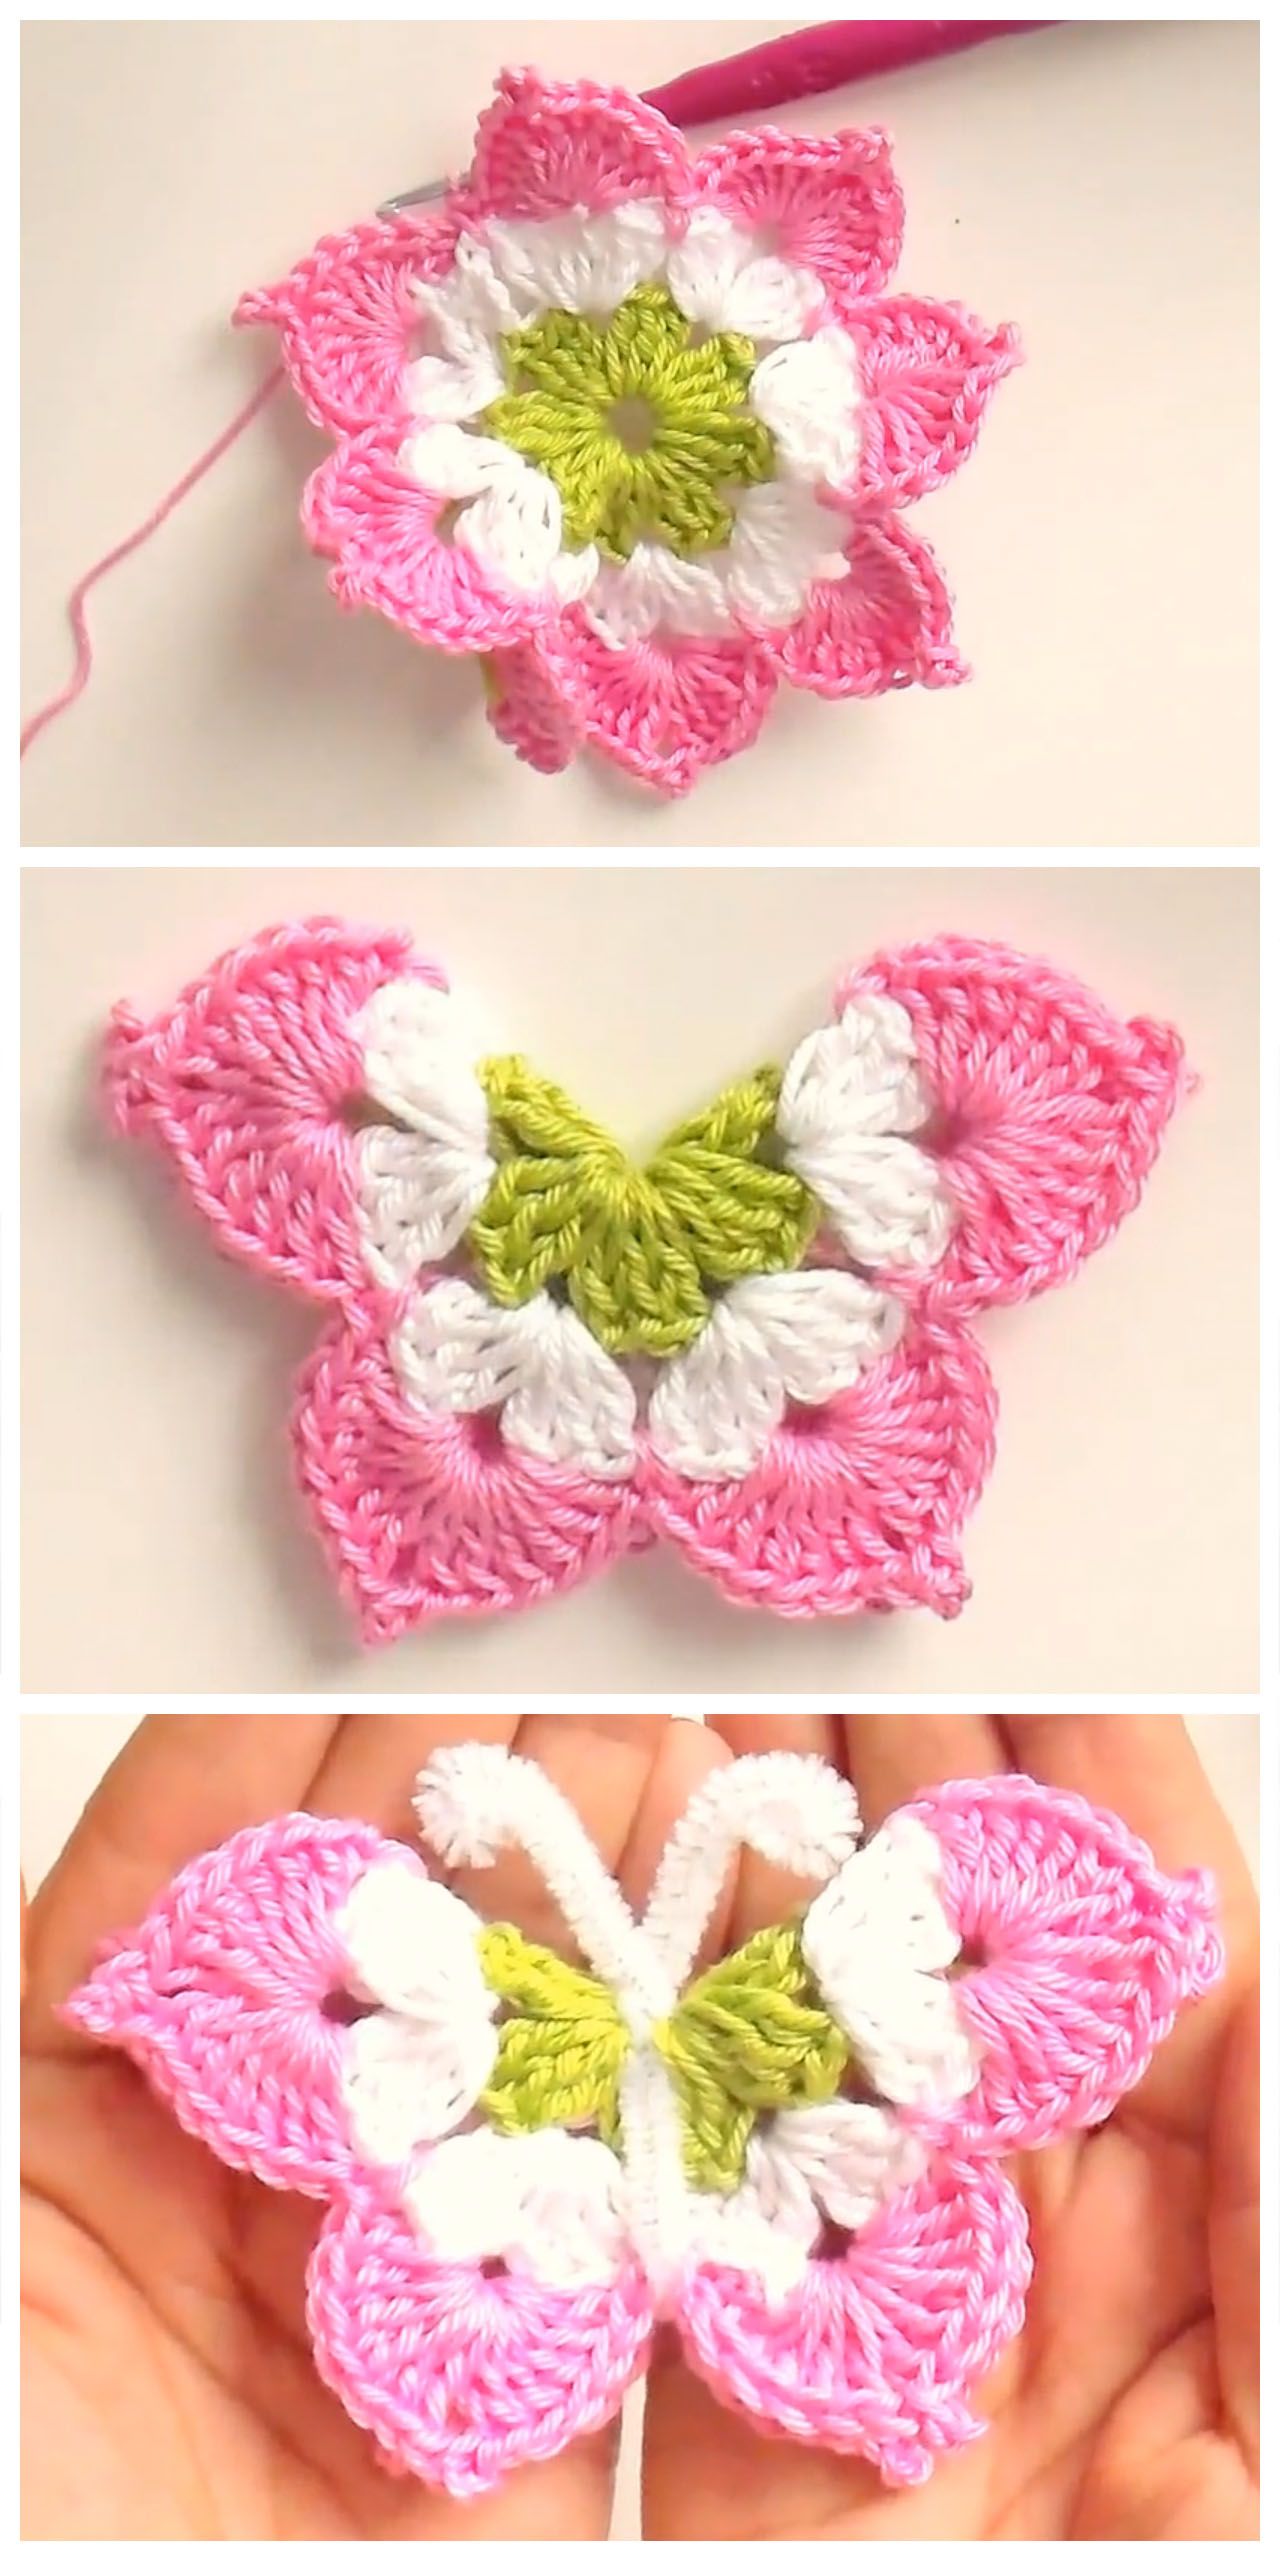 Learn-Making-Pretty-3D-Crochet-Butterfly.jpg